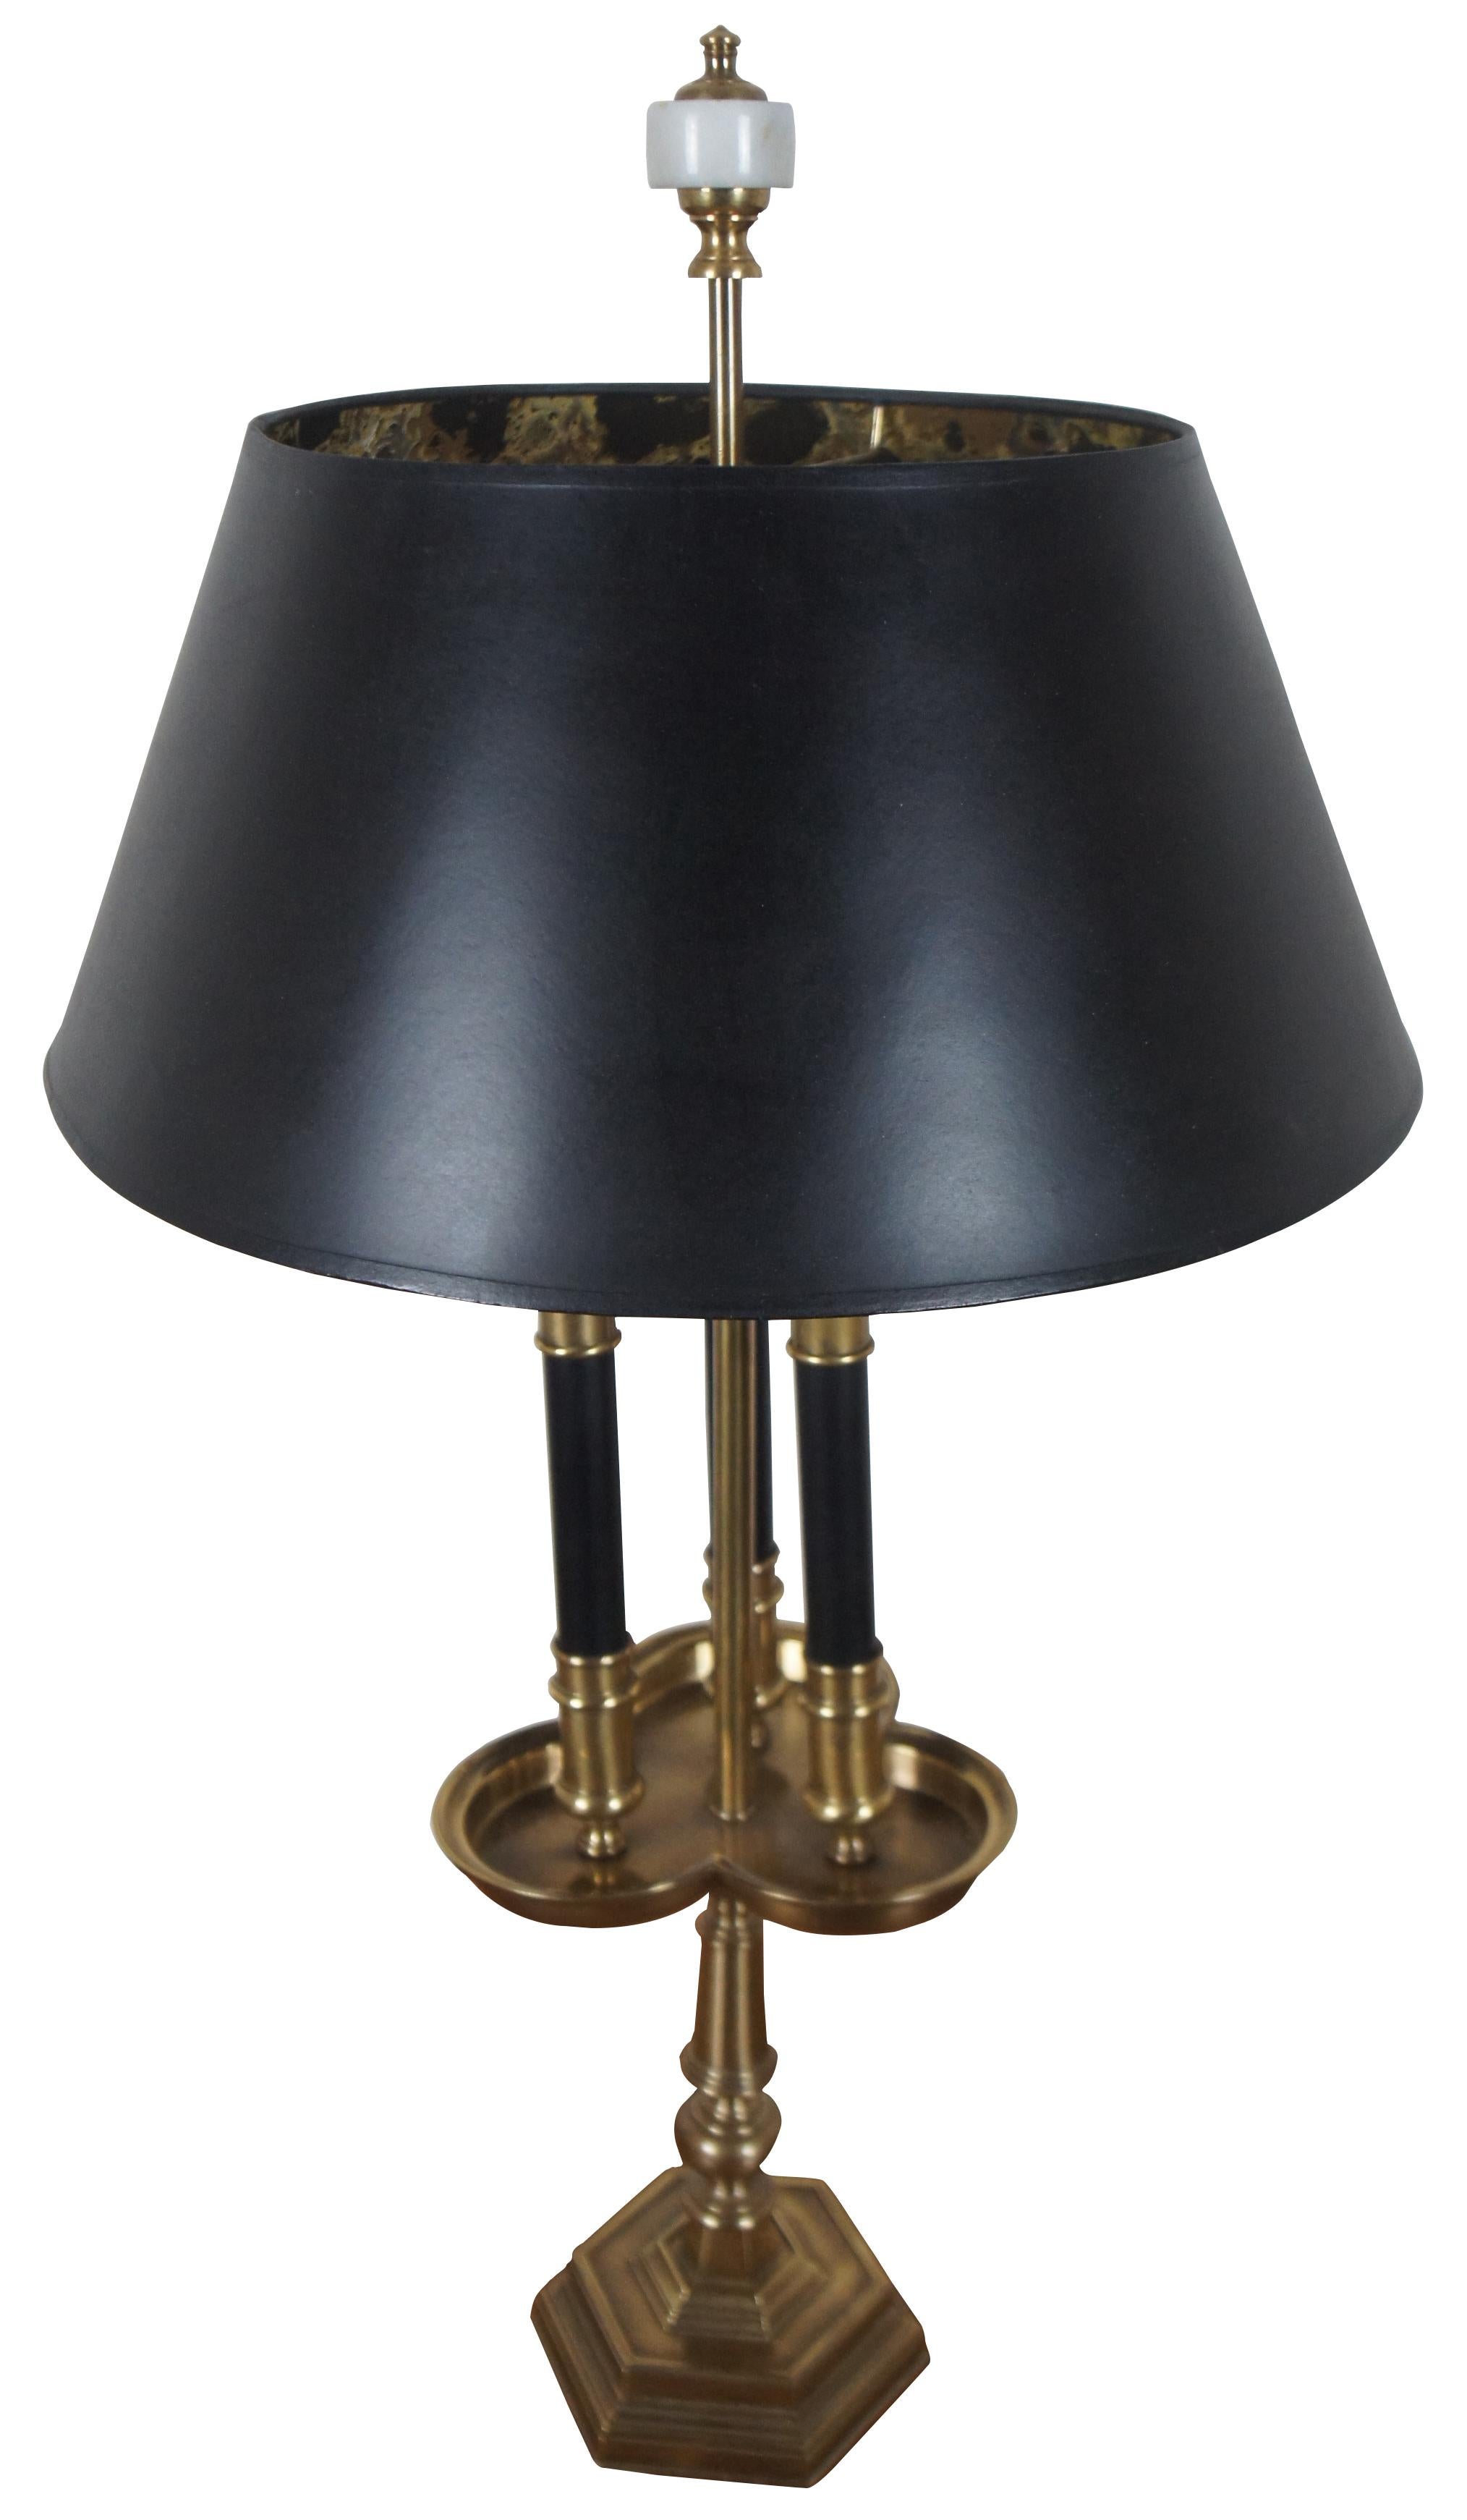 Grande lampe de table bouillotte française à deux lumières Frederick Cooper en laiton avec des accents noirs et un fleuron à pointes en marbre.

Mesures : 7 x 30 / Abat-jour - 16,25 x 7 (diamètre x hauteur).